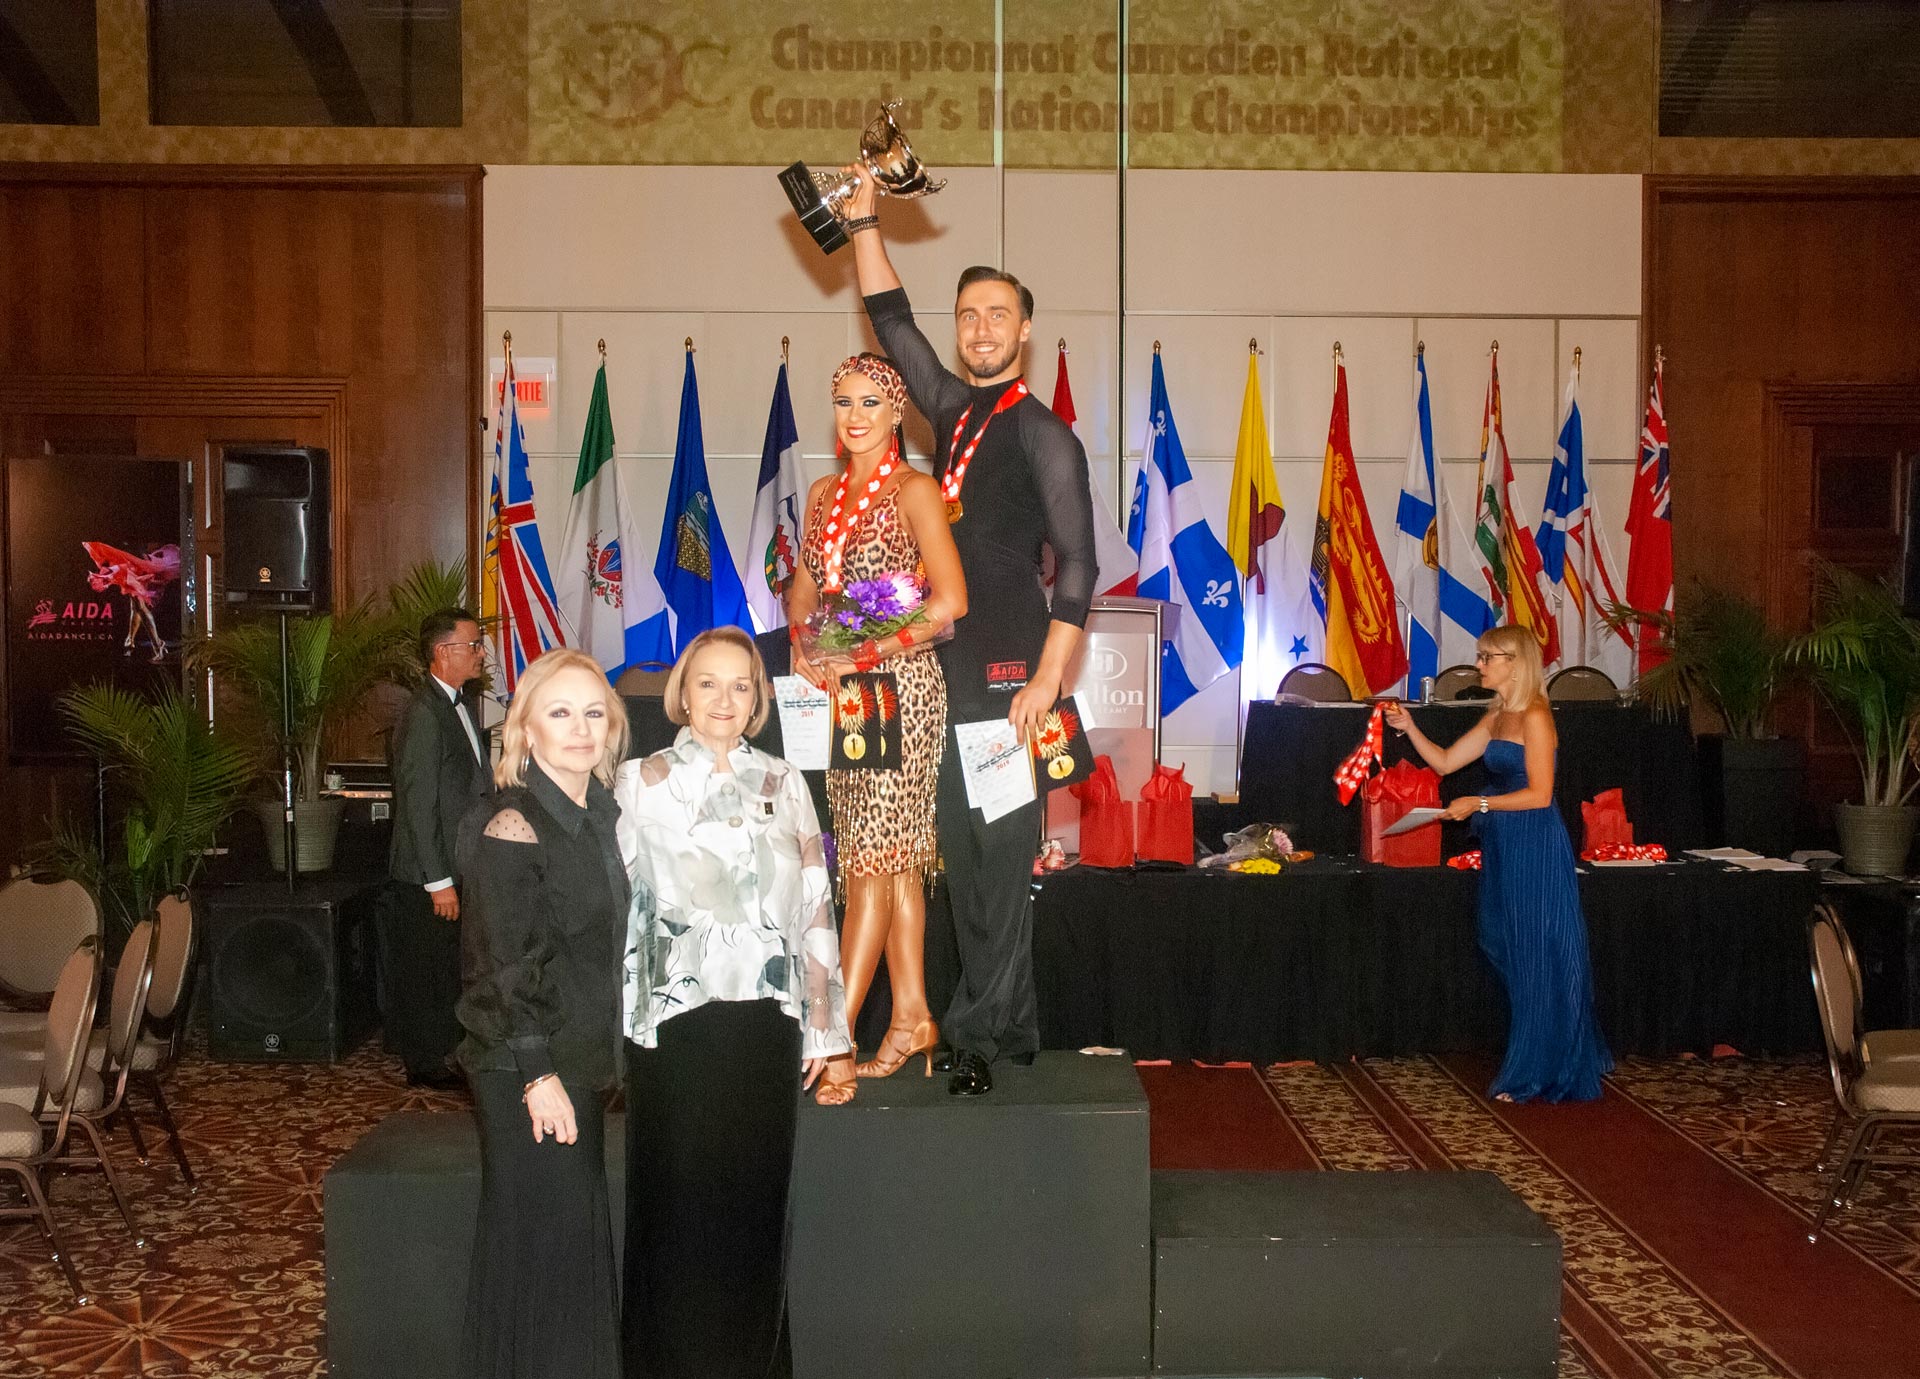 Gagnants du Championnat Canadien Professionnel 9-Danses 2019